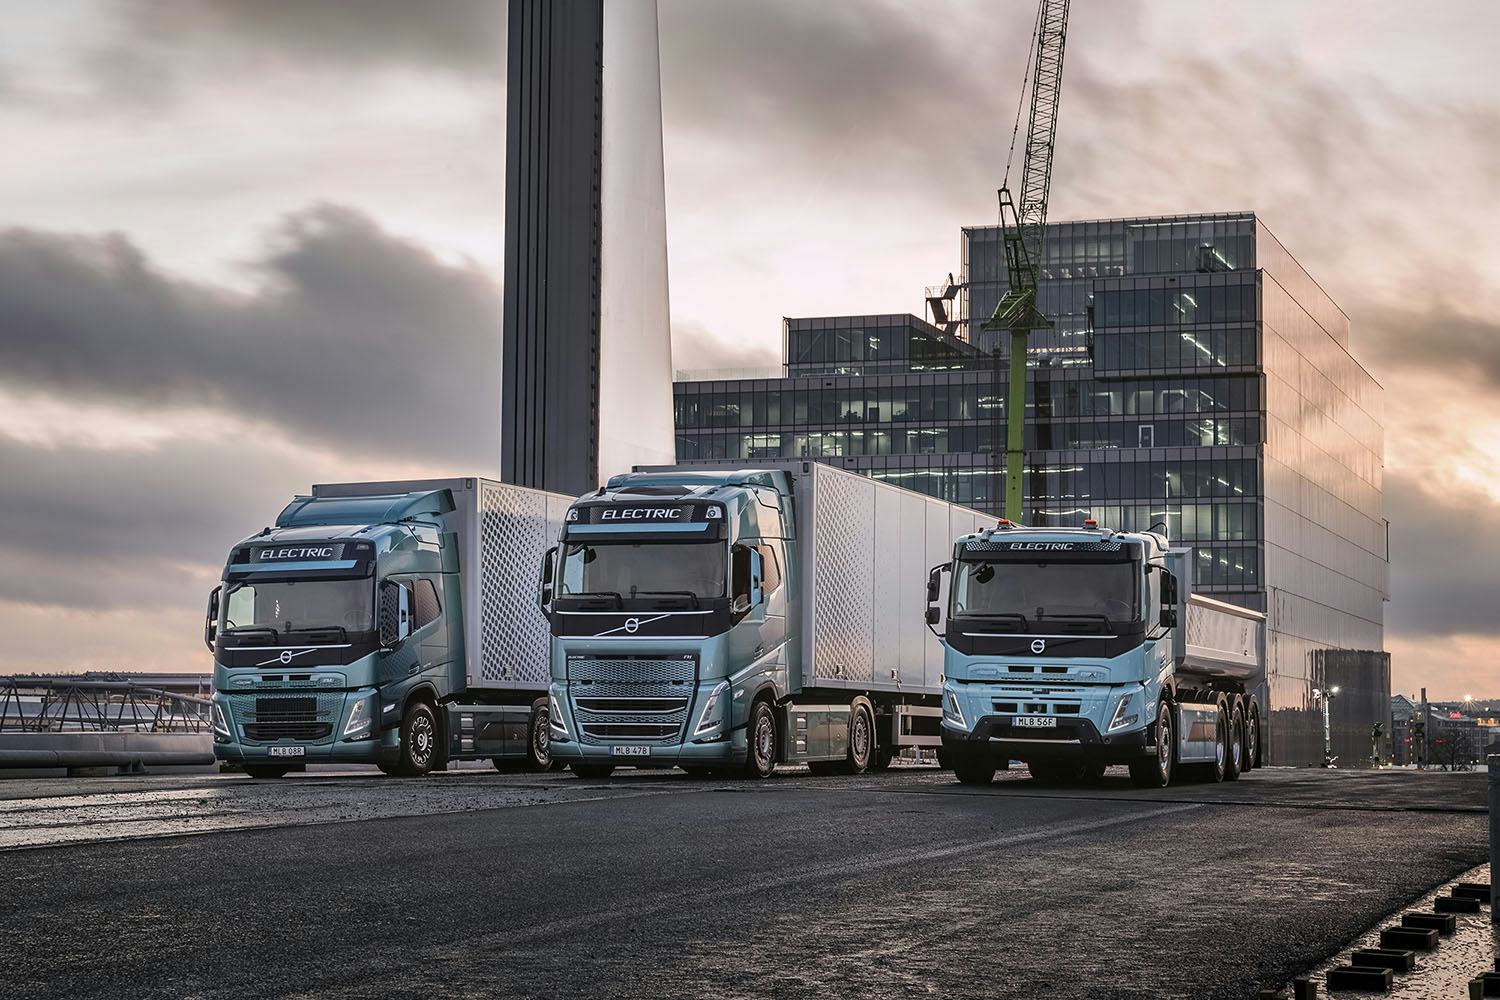 Verkoop emissievrije vrachtwagens in 2021 flink gedaald